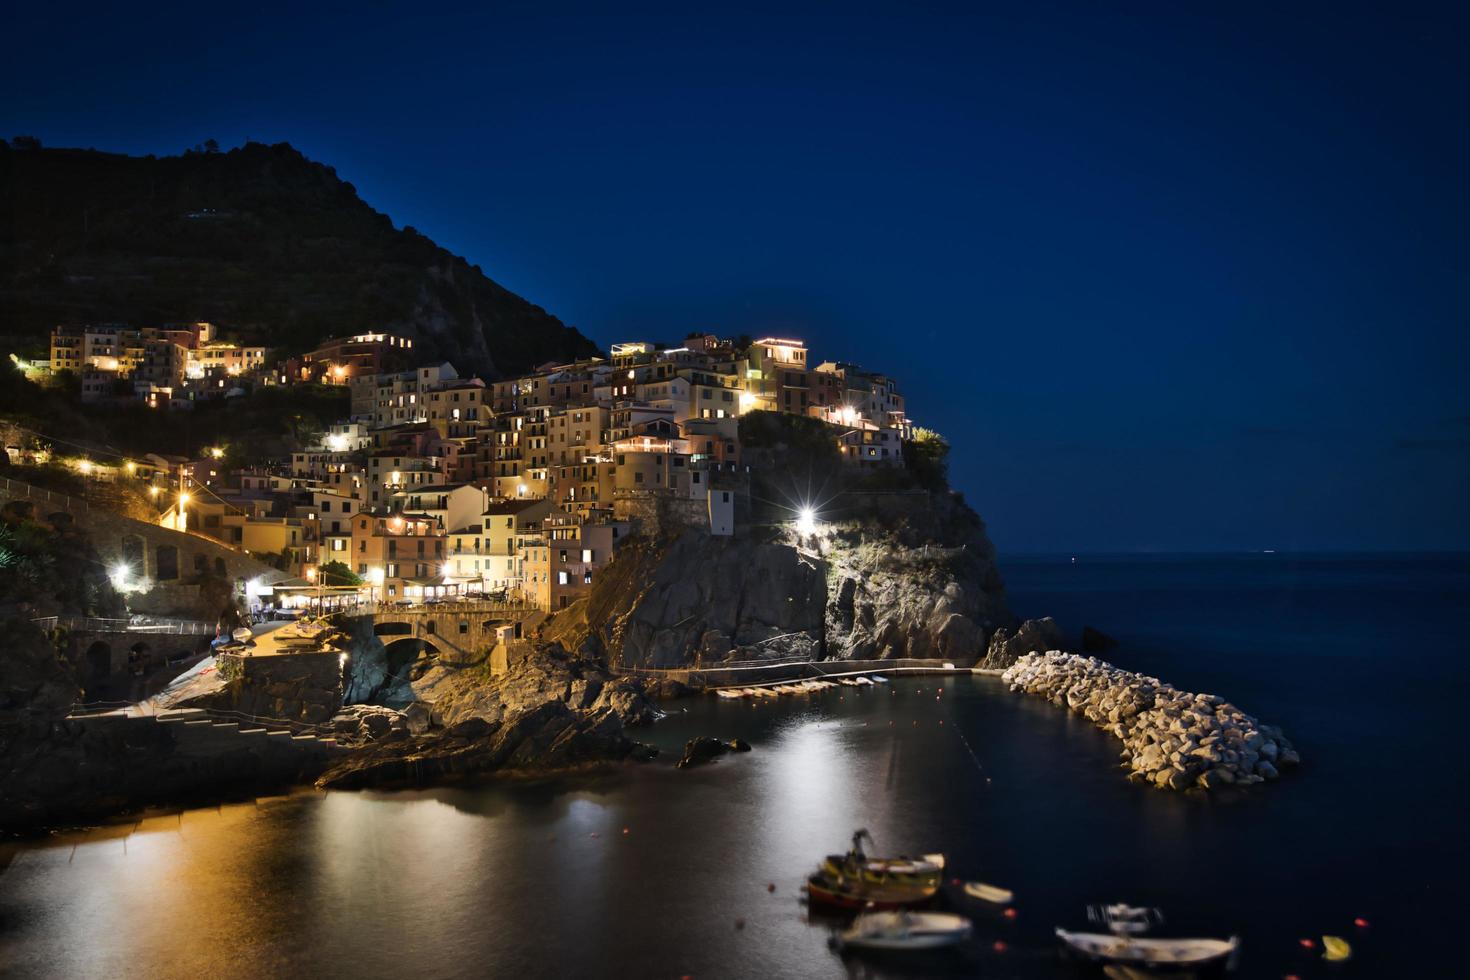 Night view of Manarola, Cinque Terre, Italy photo